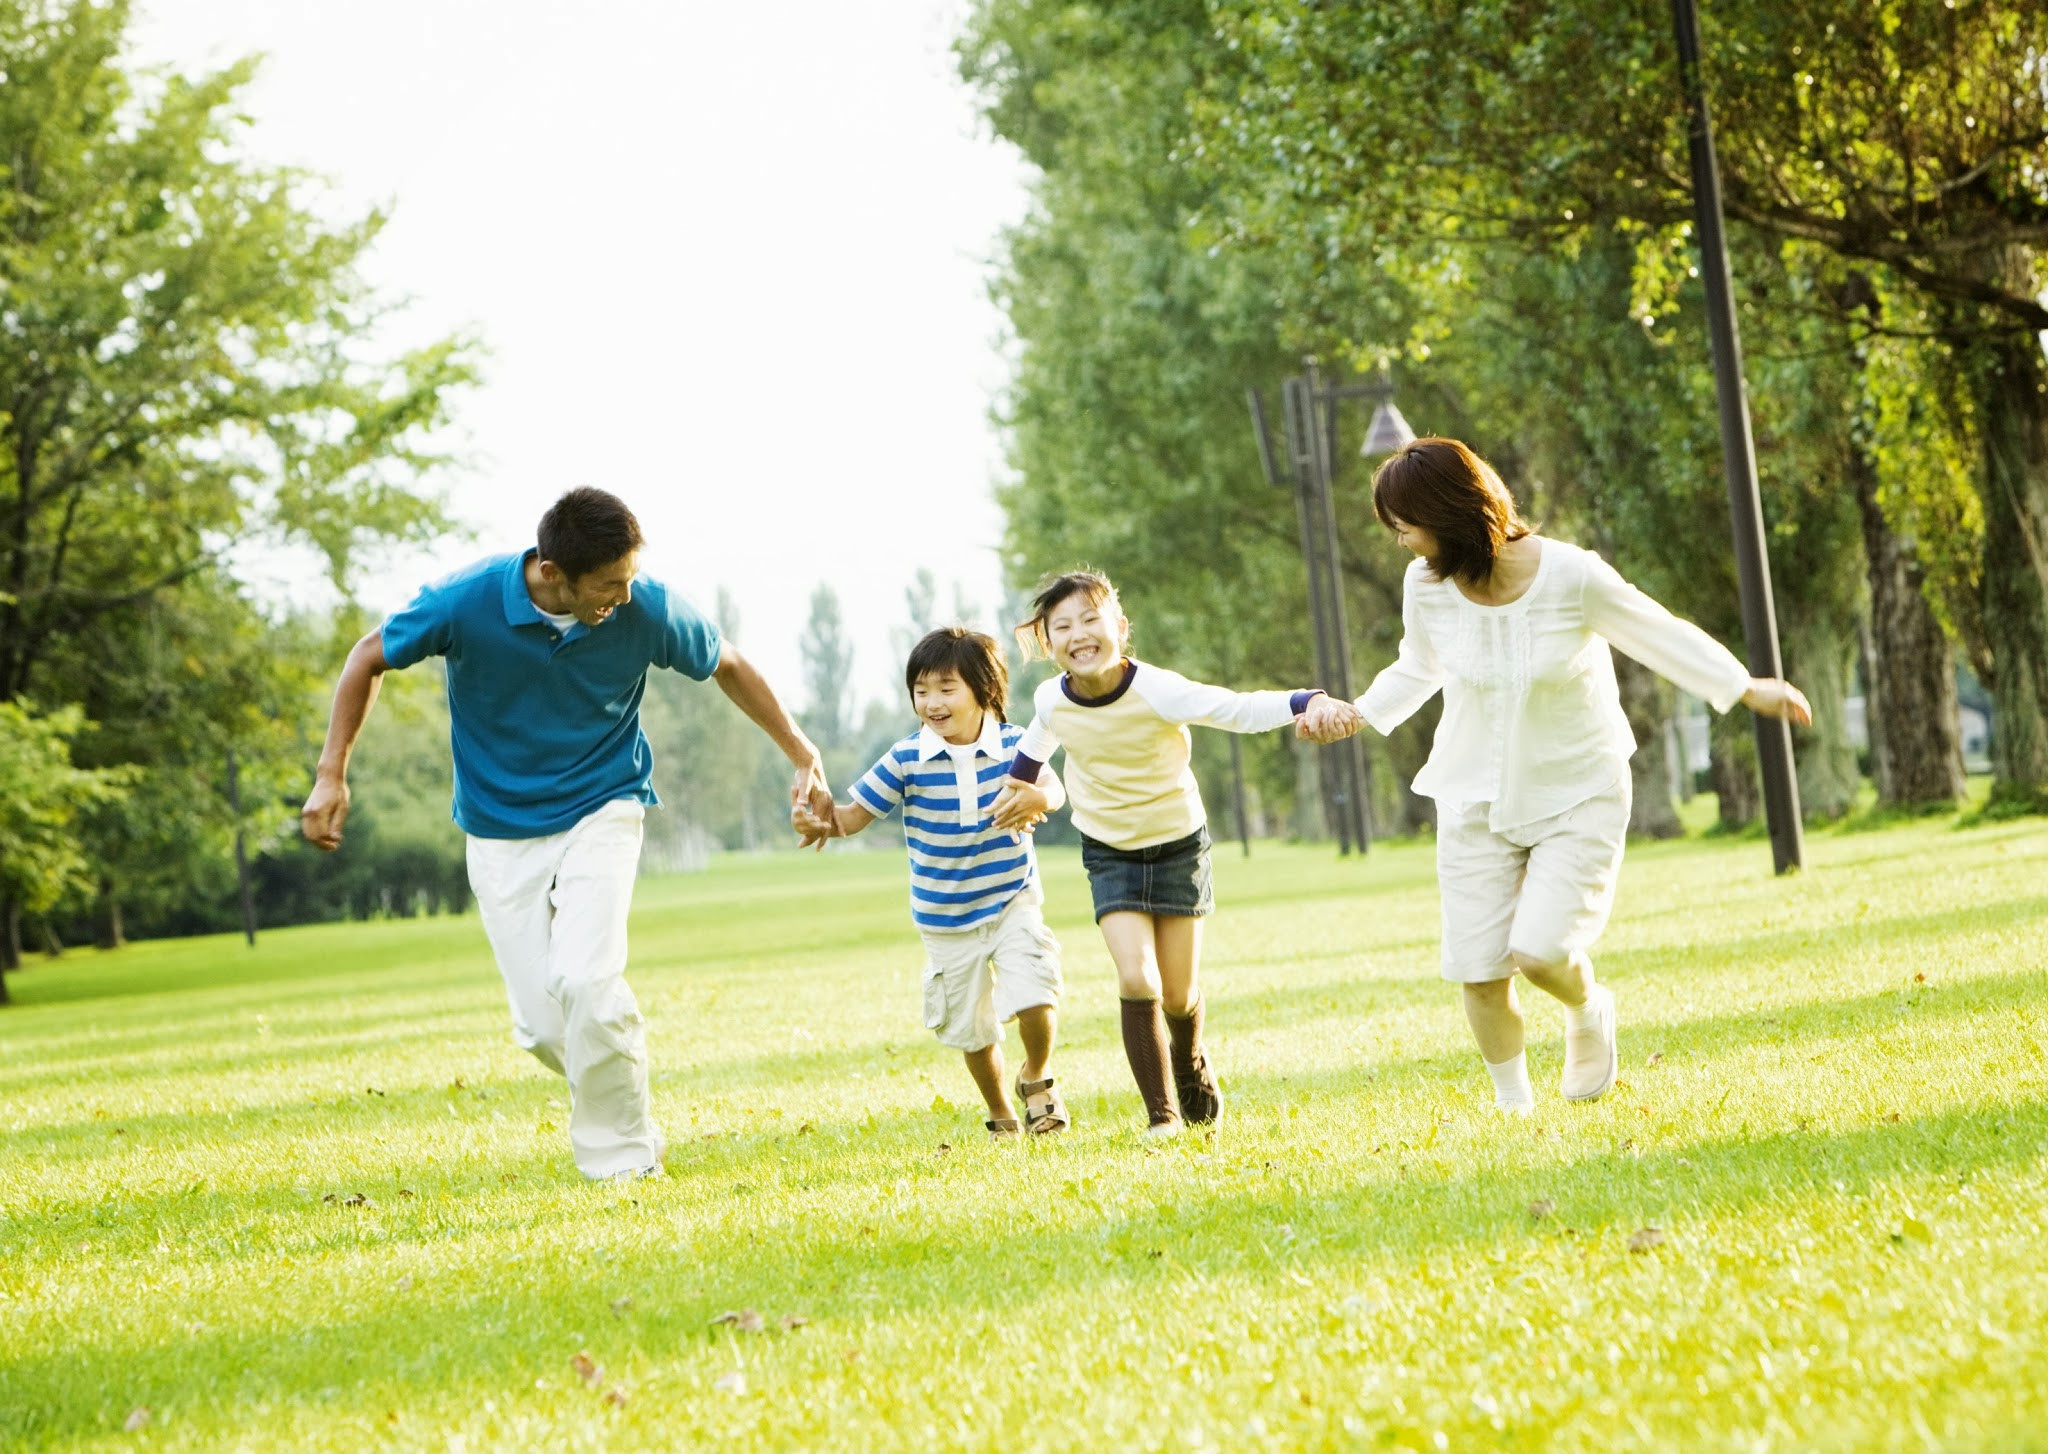 Gia đình: Không có gì quan trọng hơn gia đình. Hãy xem những hình ảnh đáng yêu về những gia đình hạnh phúc và tình cảm thiêng liêng. Hình ảnh này sẽ khiến bạn cảm nhận được sự ấm áp và hạnh phúc của một gia đình đúng nghĩa.